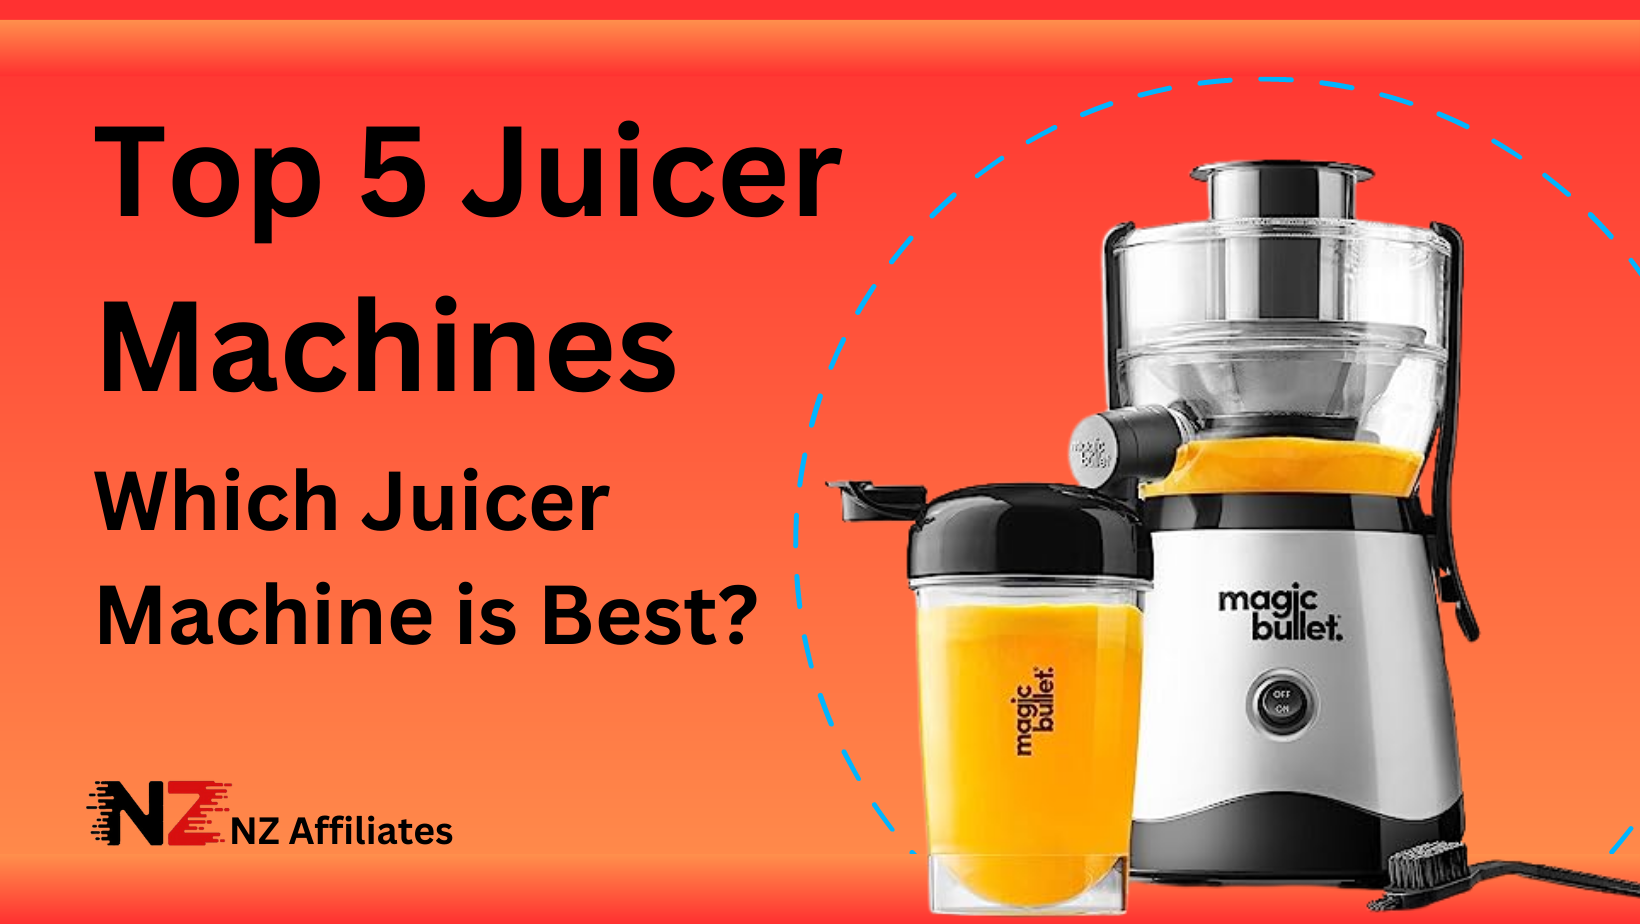 Top 5 Juicer Machines | Which Juicer Machine is best? - NZ Affiliates